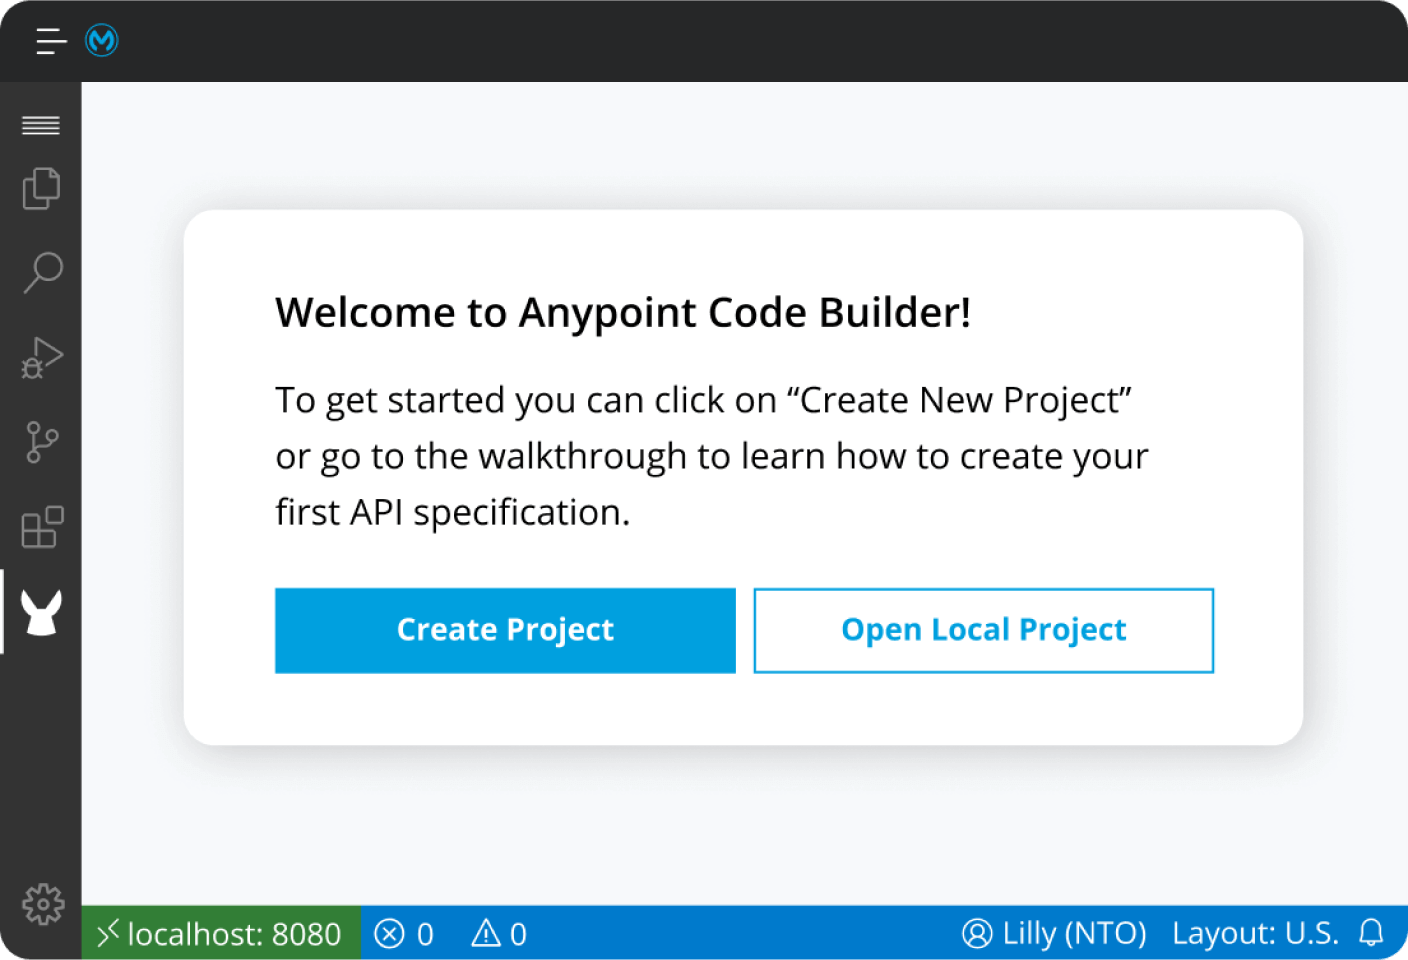 Tela do Anypoint Code Builder mostrando um ambiente integrado de implementação leve e integrado desenvolvido por Visual Studio Code